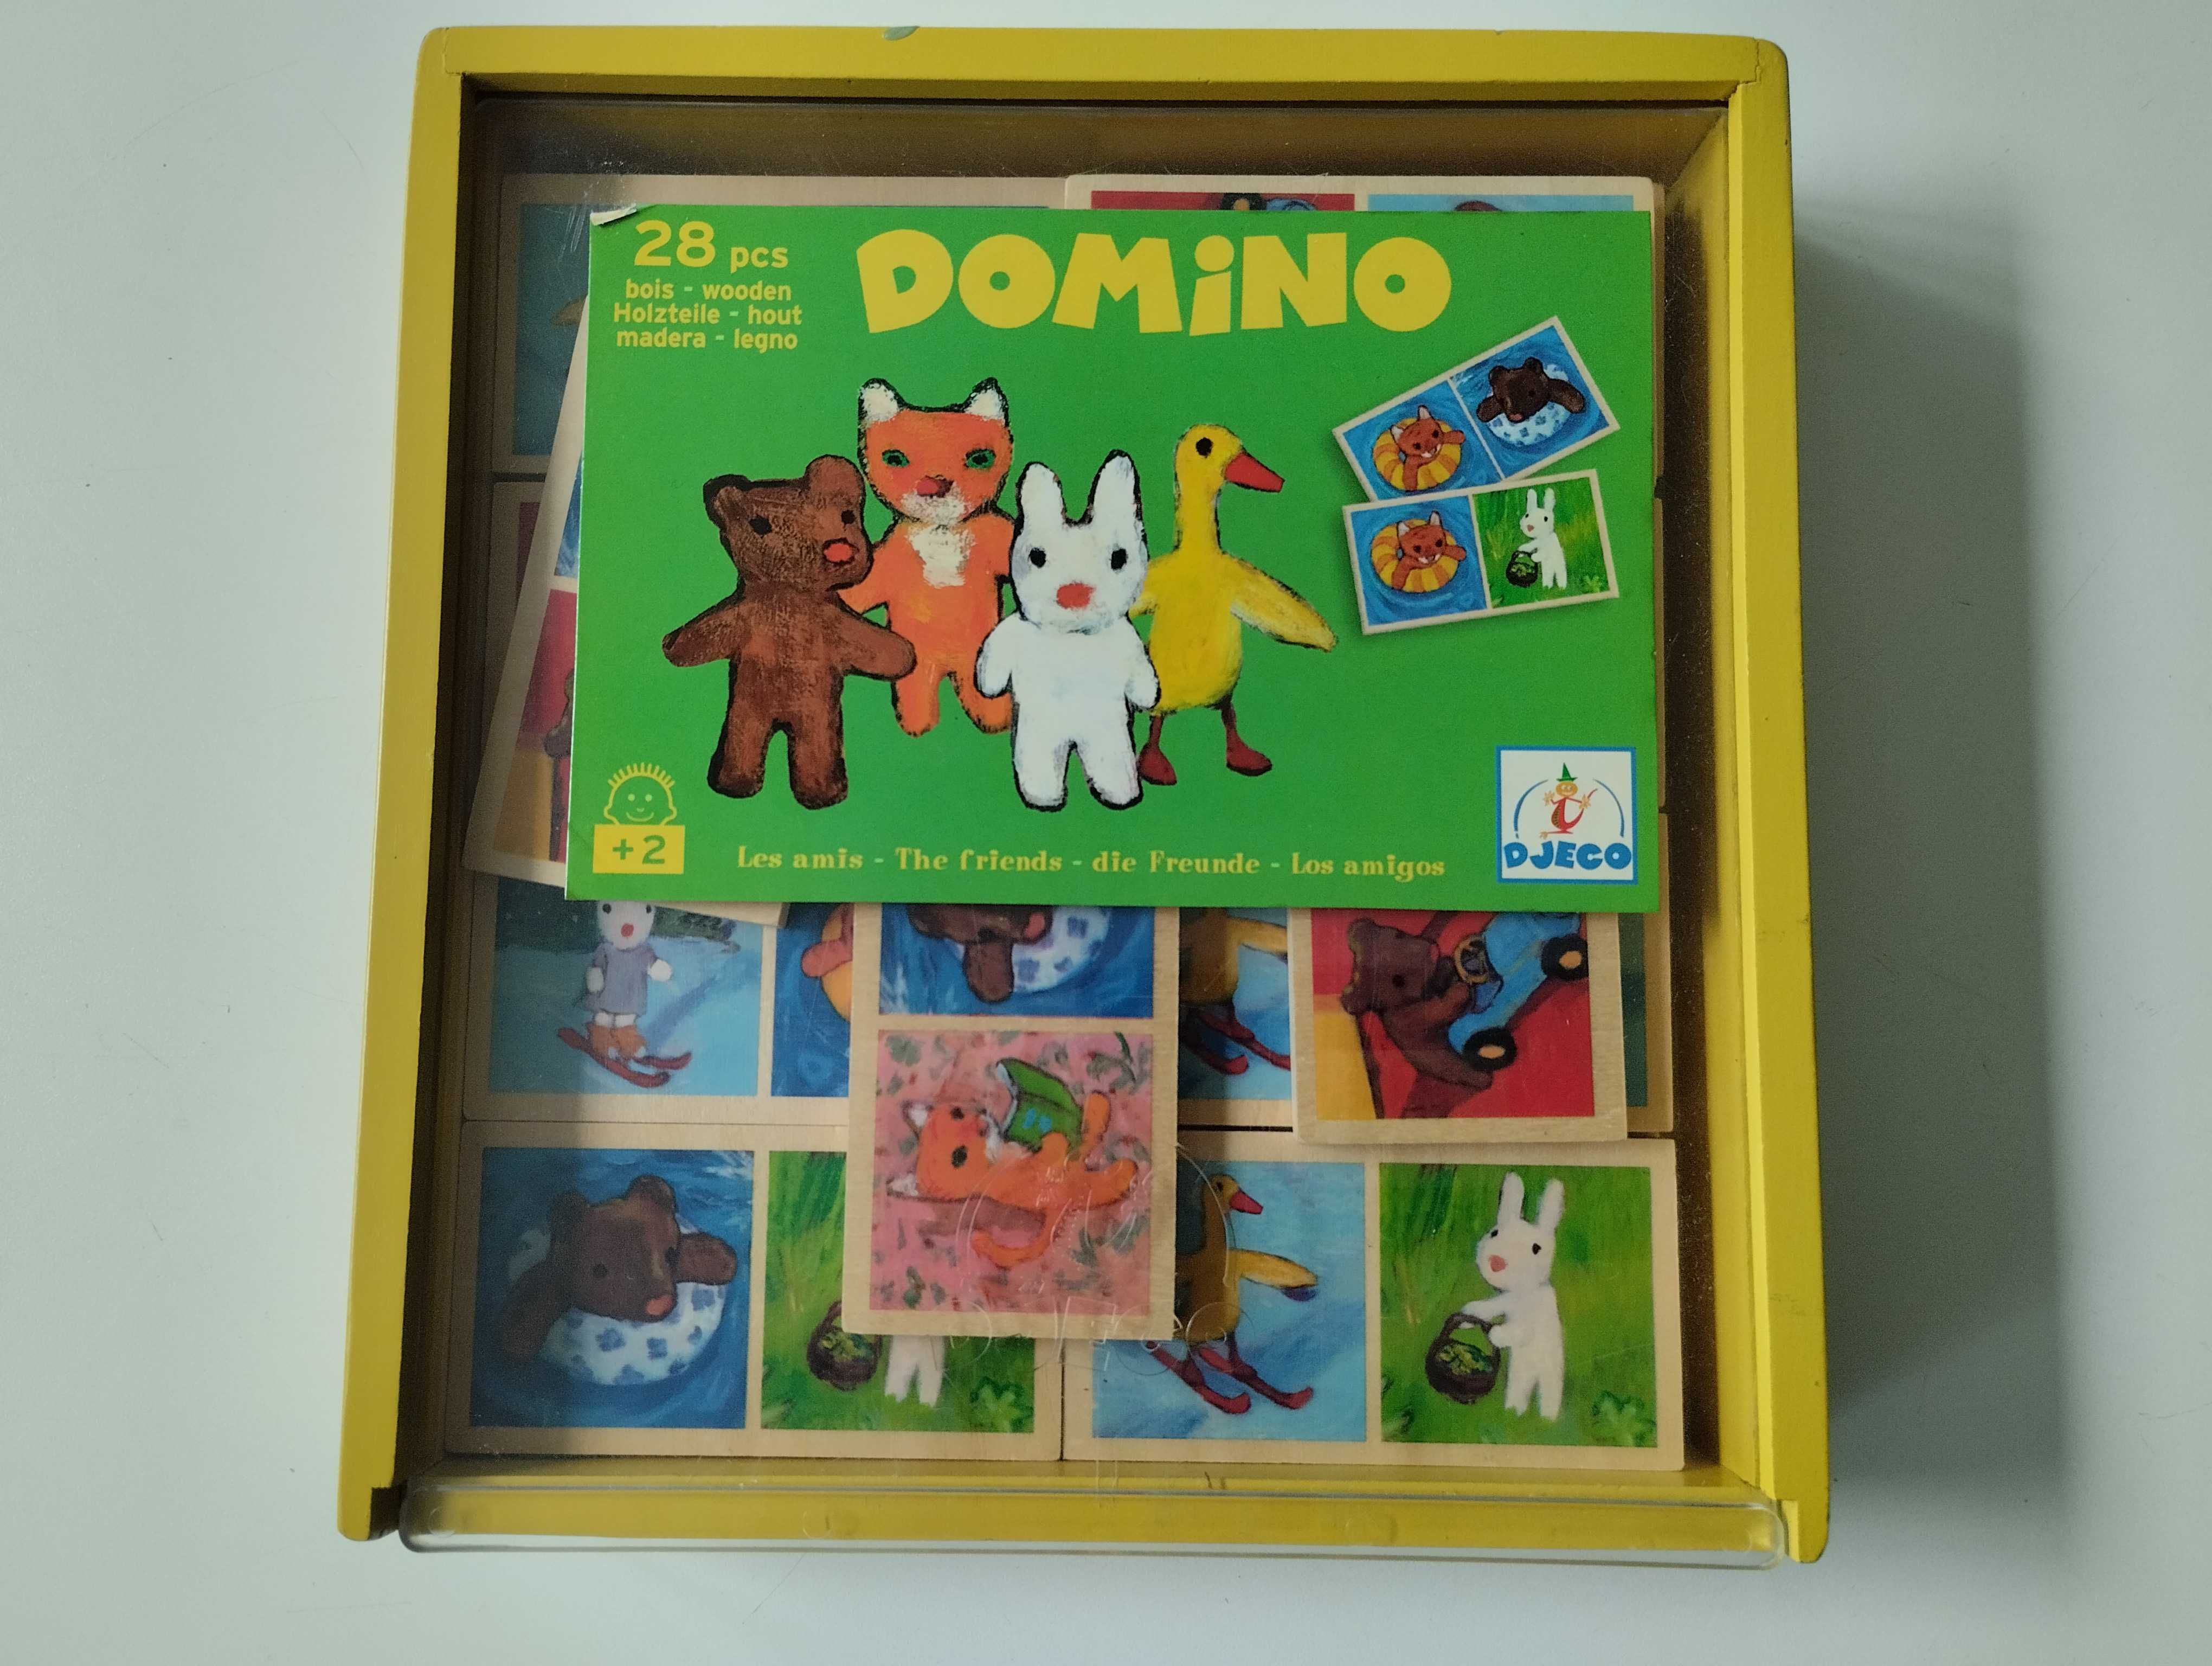 Jogo dominó para crianças +2 anos - 28 peças com duas faces diferentes